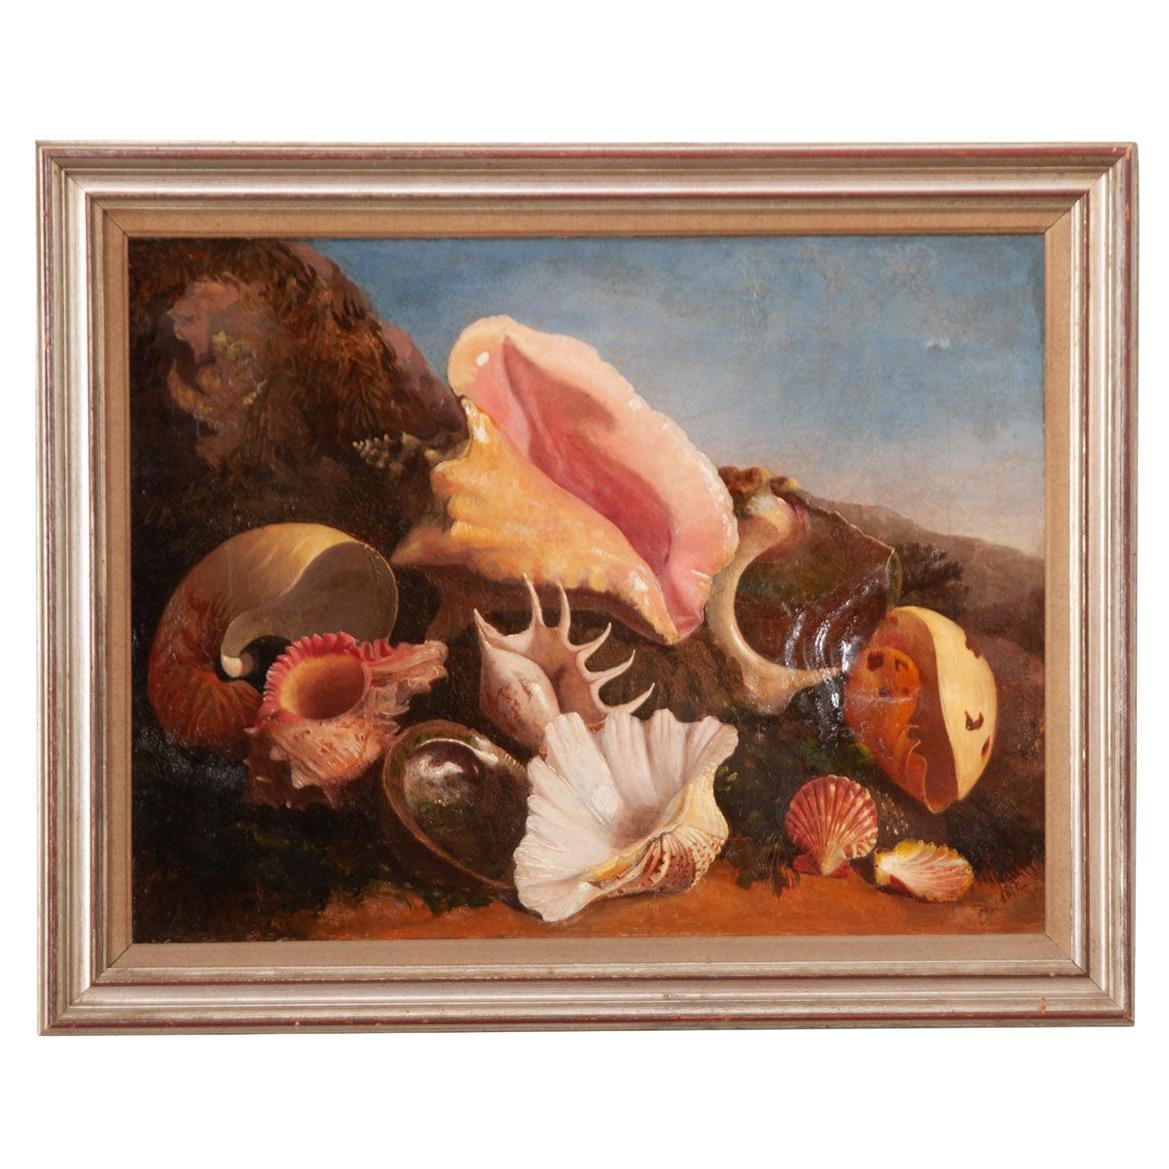 Englisches gerahmtes Gemälde von Muscheln aus dem 19. Jahrhundert